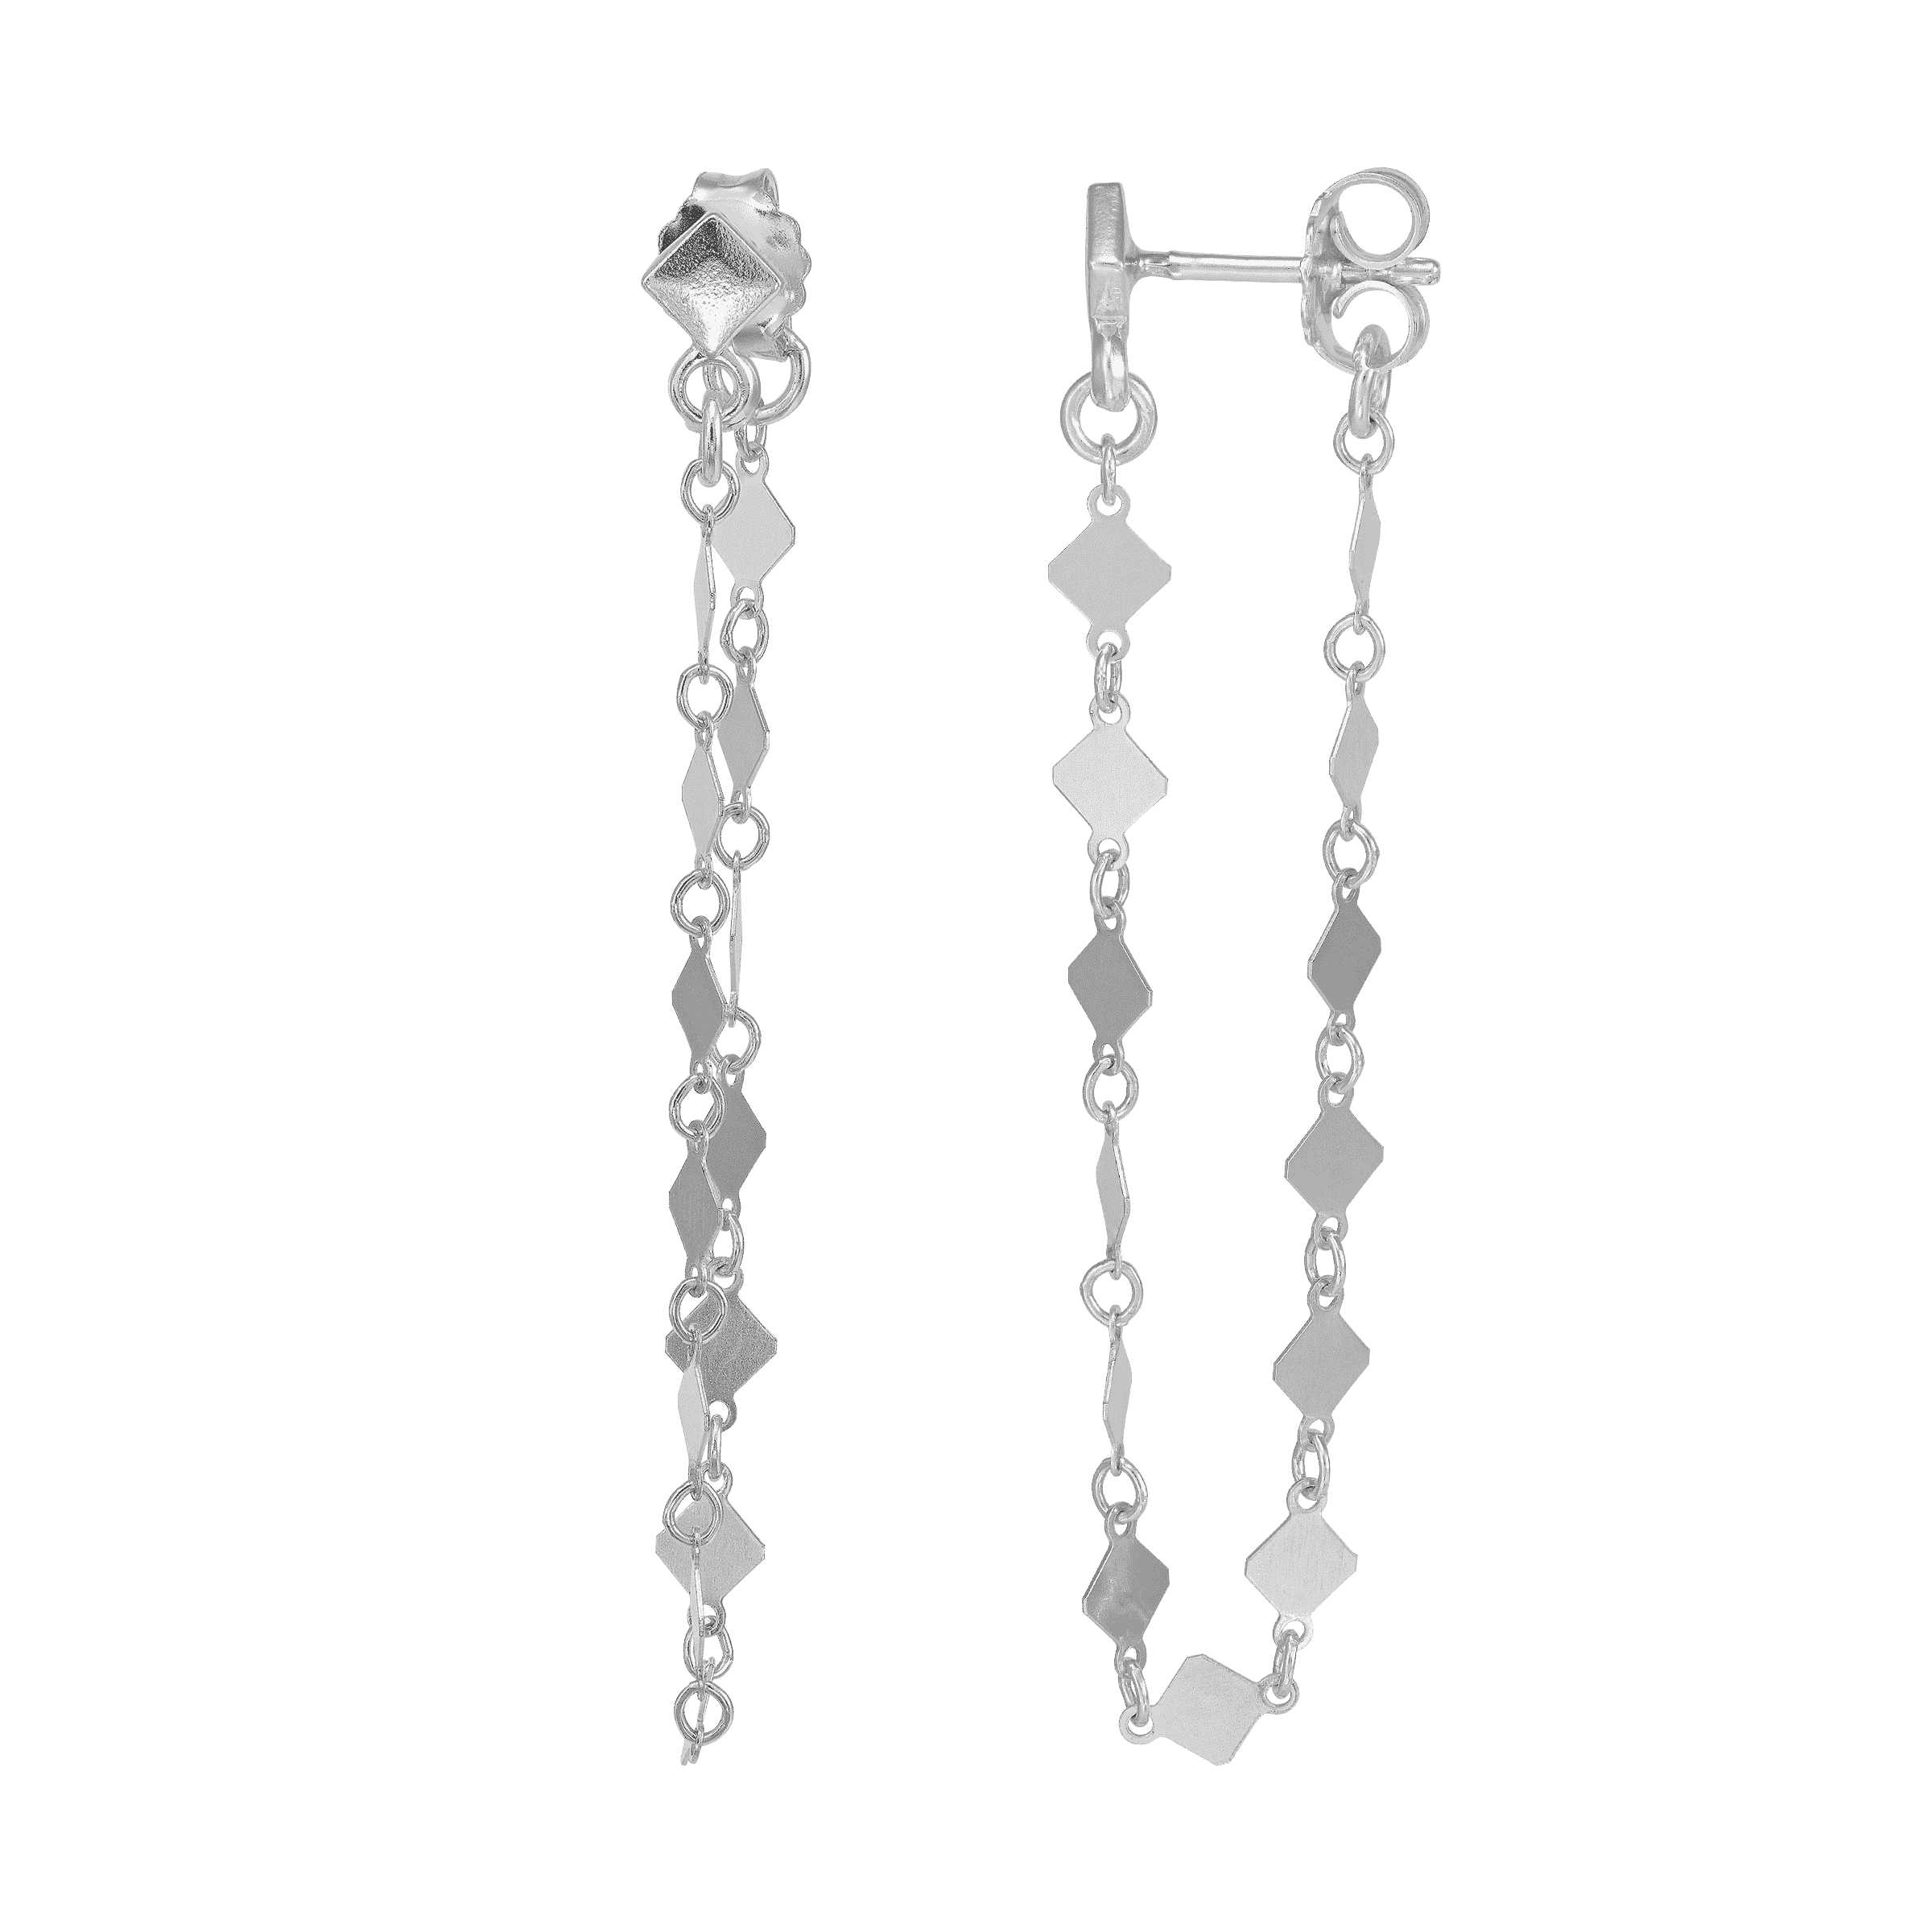 Silpada 'Square Gazing' Drop Earrings in Sterling Silver | Silpada